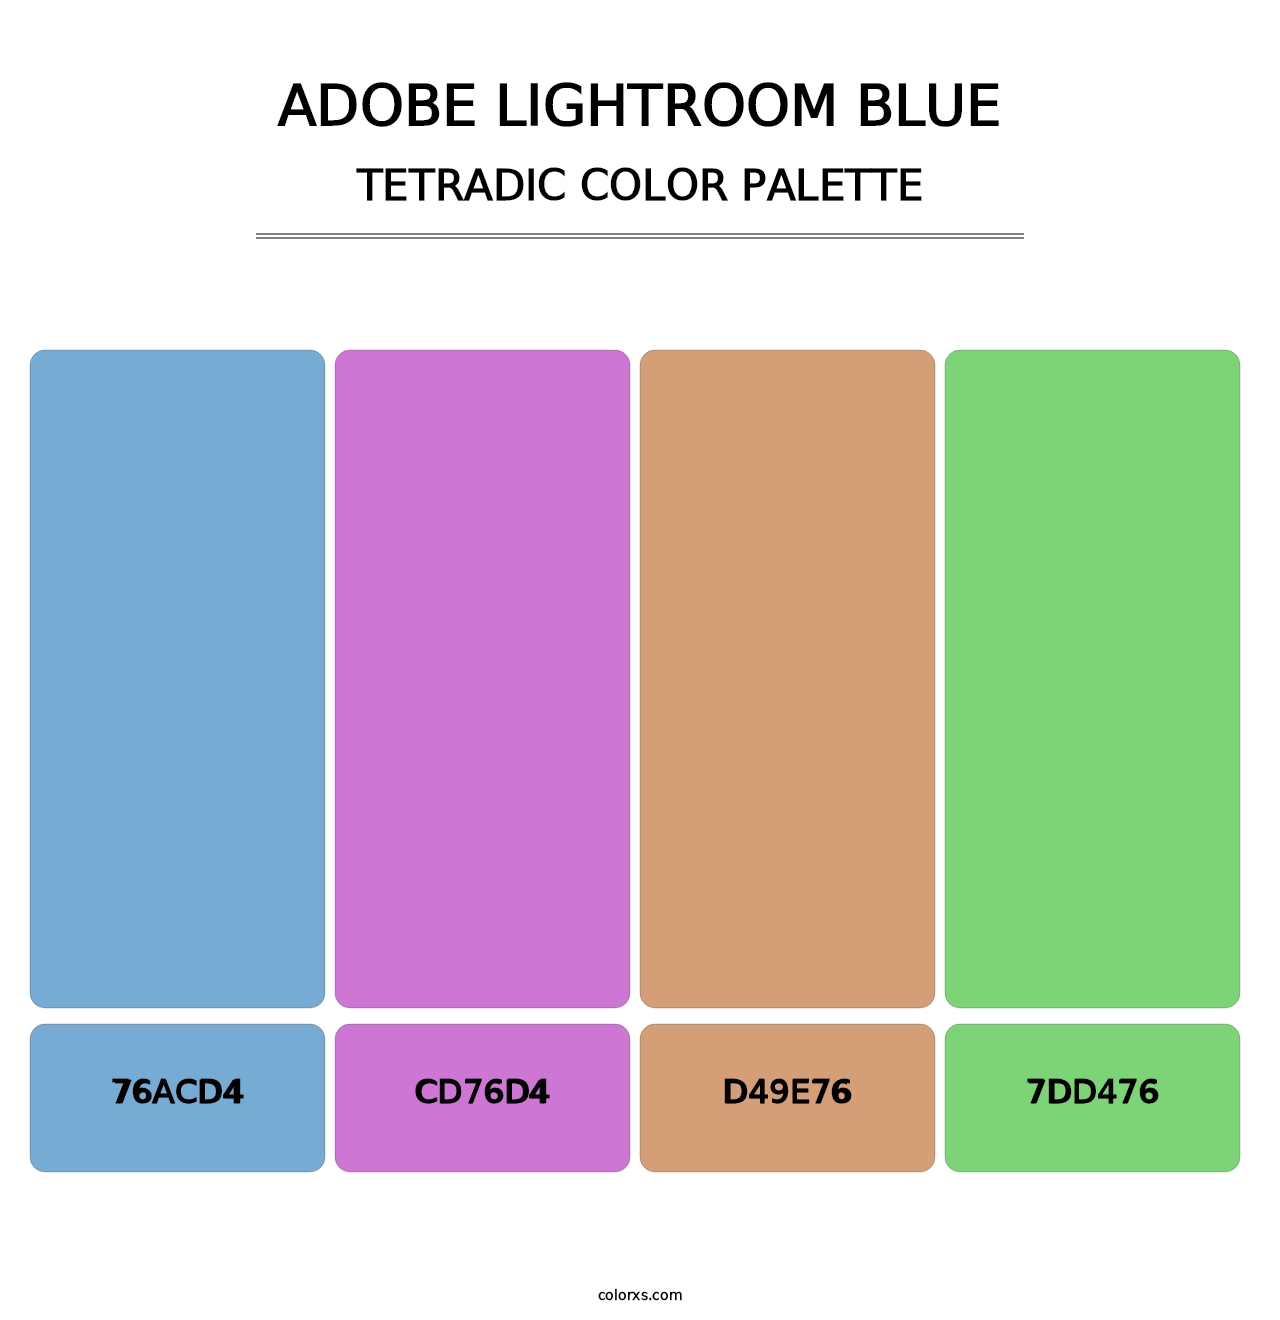 Adobe Lightroom Blue - Tetradic Color Palette